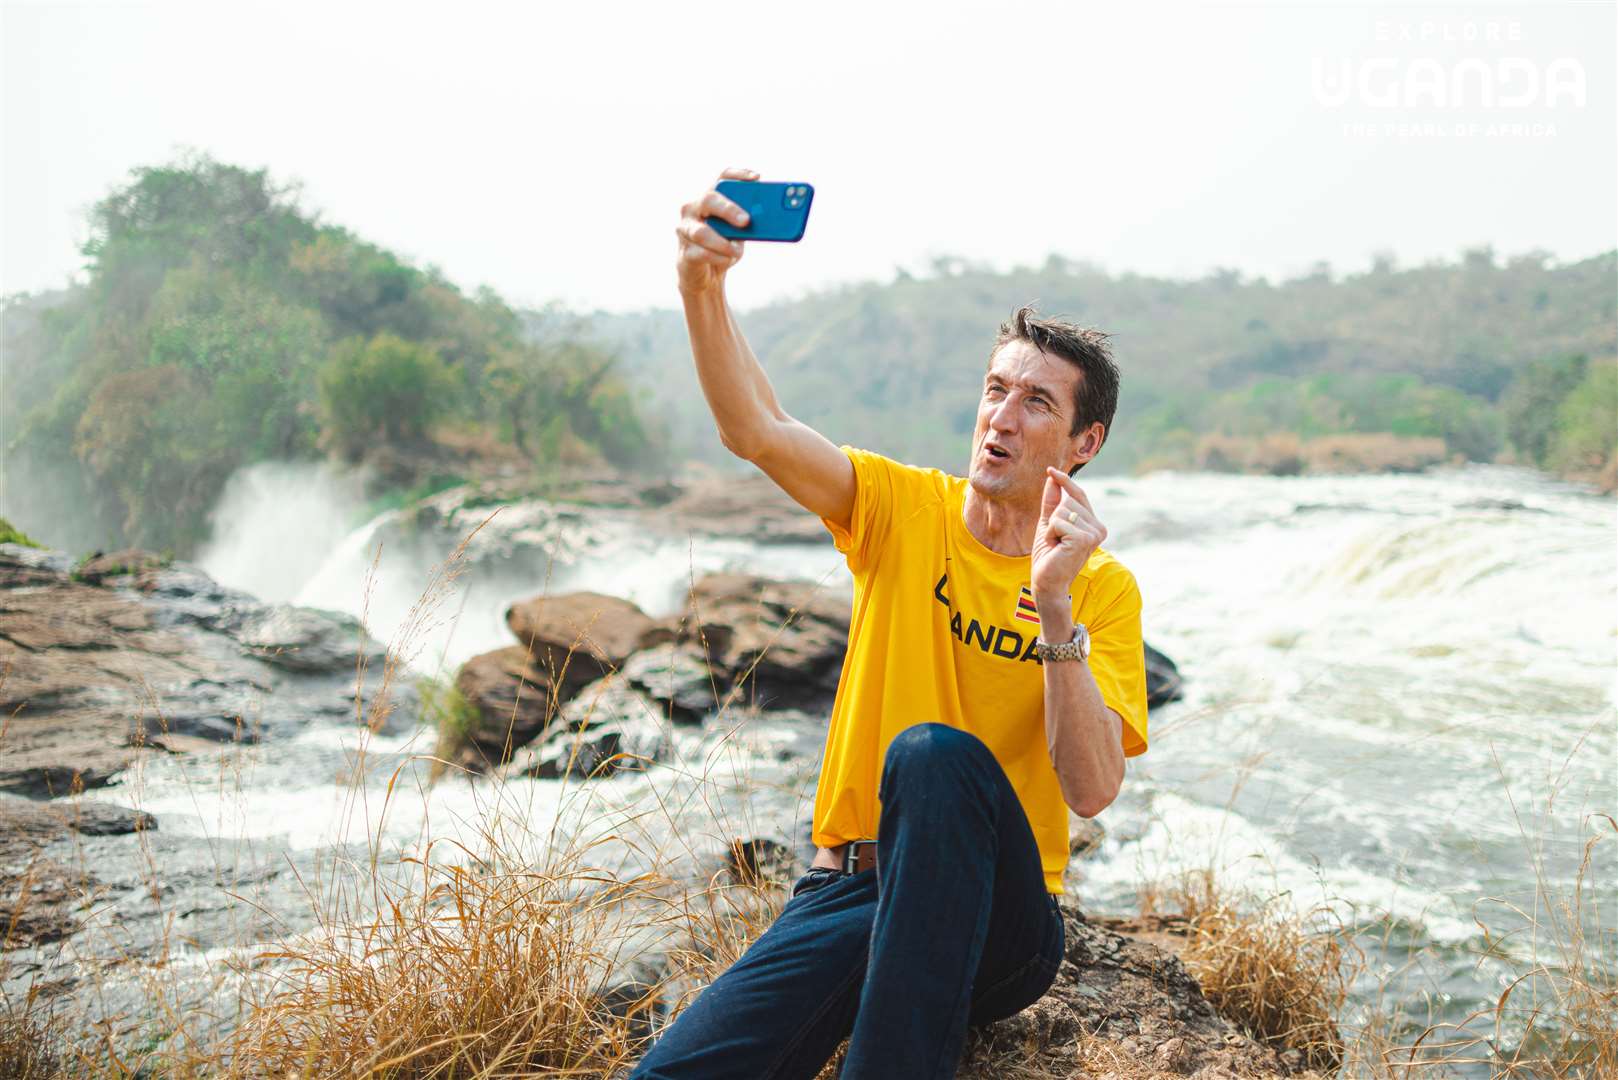 Sports commentator Rob Walker taking a selfie in front of Murchison Falls in Uganda (Uganda Tourism Board)